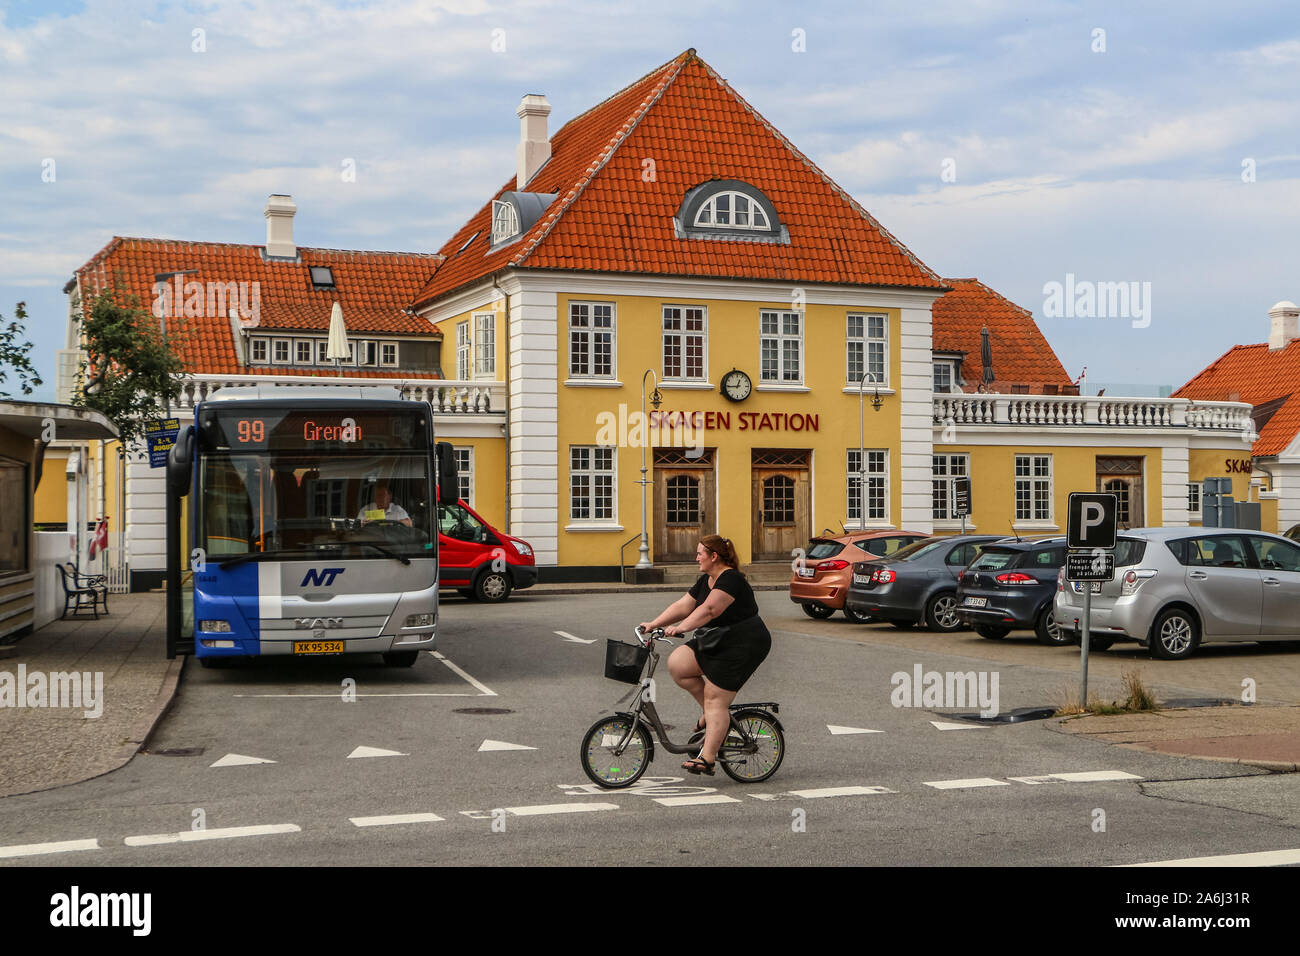 Menschen reiten auf Fahrrädern vor Skagen Bahnhof sind in Skagen, Dänemark am 28. Juli 2019 Skagen ist die nördlichste Stadt Dänemarks, an der Ostküste der Halbinsel Skagen Odde ganz im Norden von Jütland. © Michal Fludra/Alamy leben Nachrichten Stockfoto